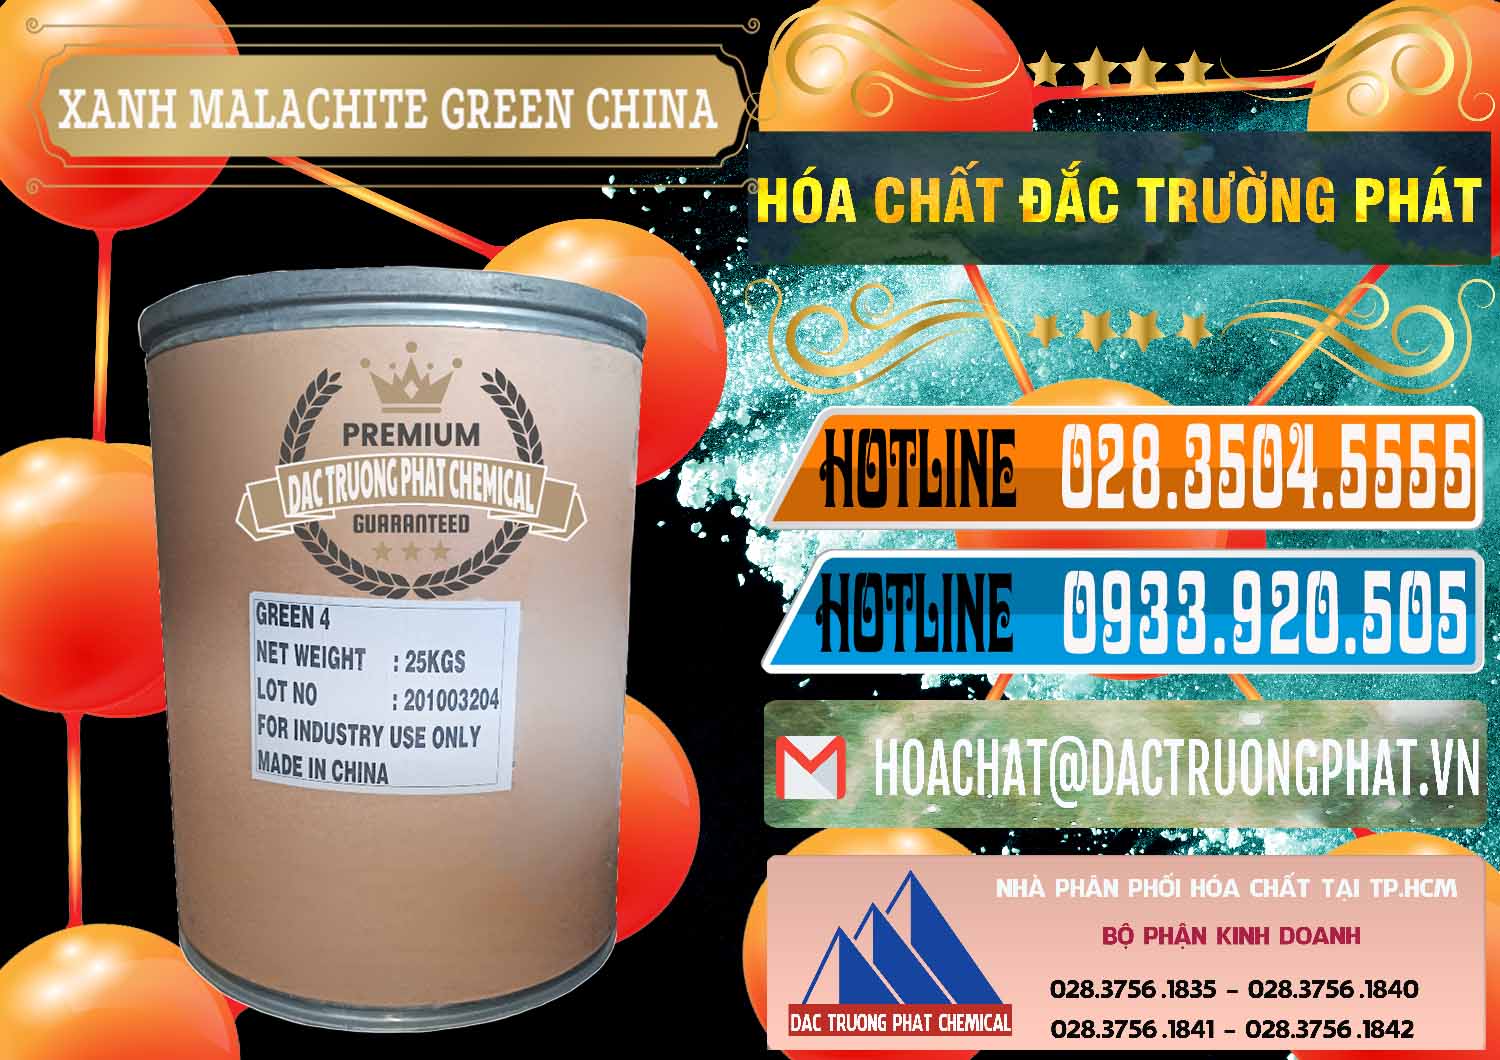 Chuyên bán & phân phối Xanh Malachite Green Trung Quốc China - 0325 - Cty cung cấp và phân phối hóa chất tại TP.HCM - stmp.net